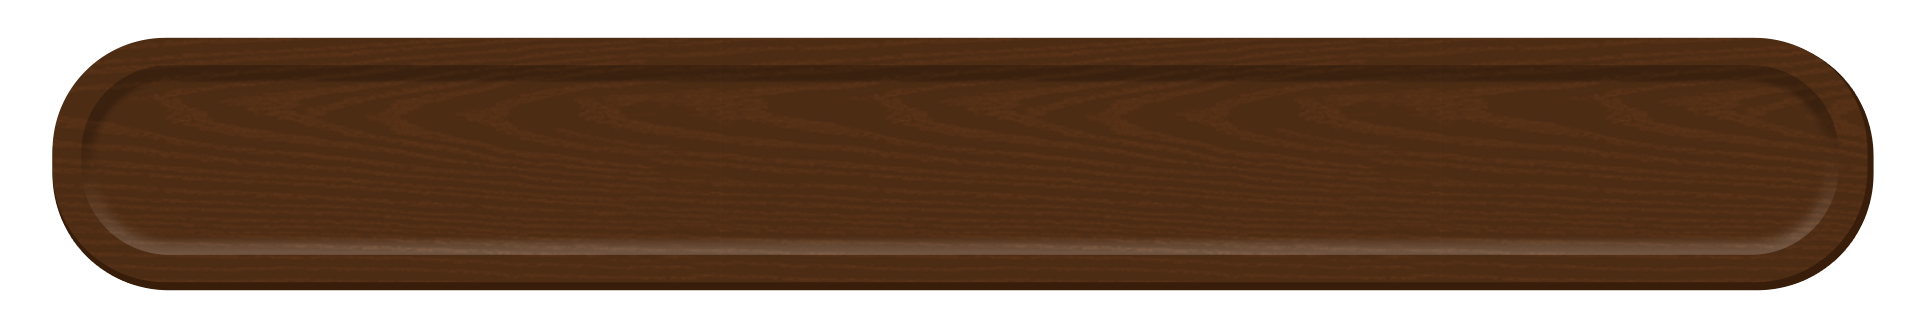 木製おぼんのテロップ 茶色 テロップ サイト